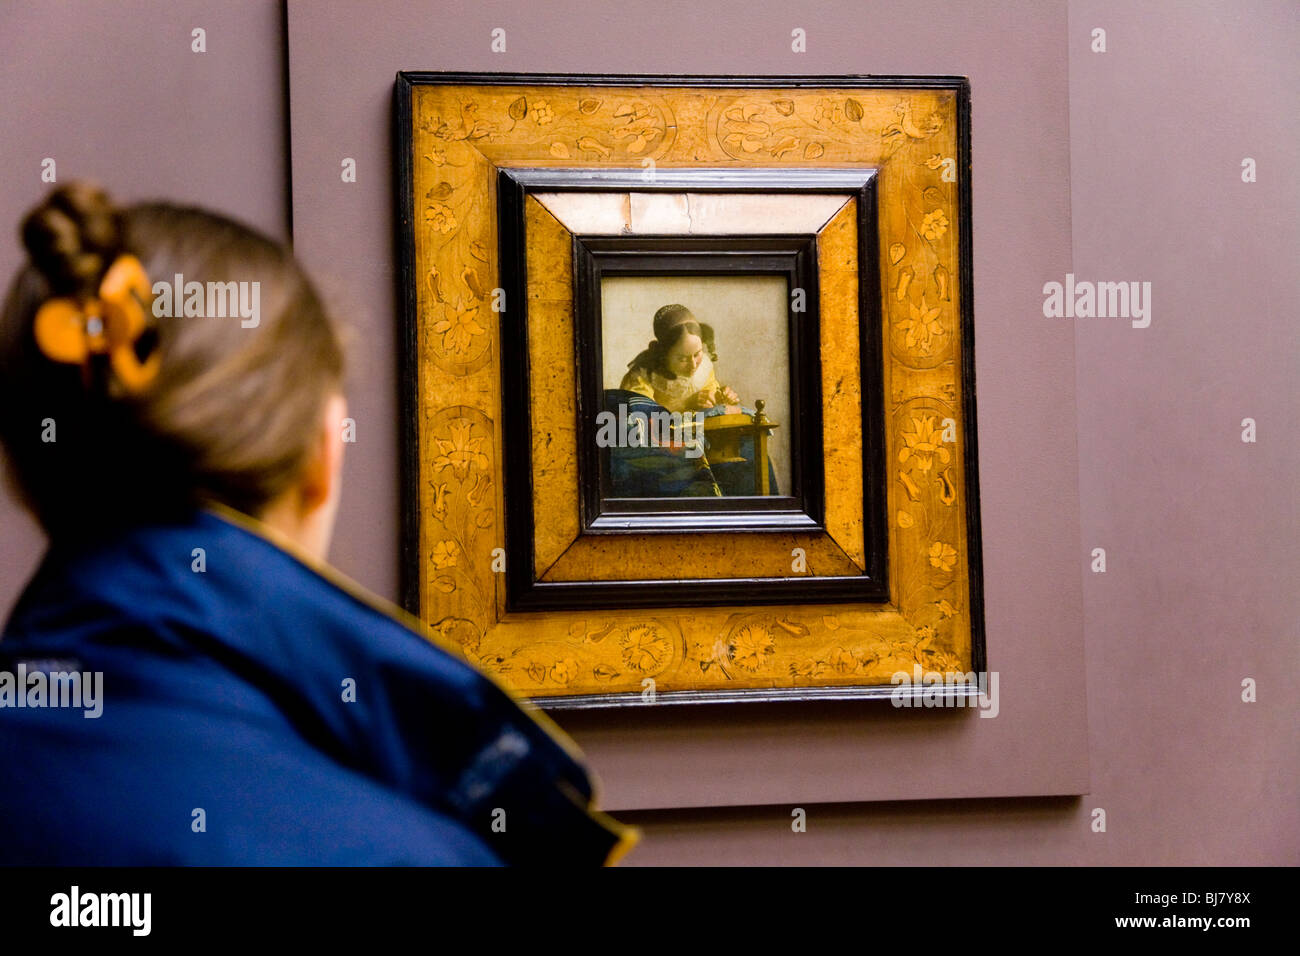 Frau Touristen betrachten die Spitzenklöpplerin Gemälde von Vermeer, Jan. Das Louvre, Paris. Frankreich. Stockfoto